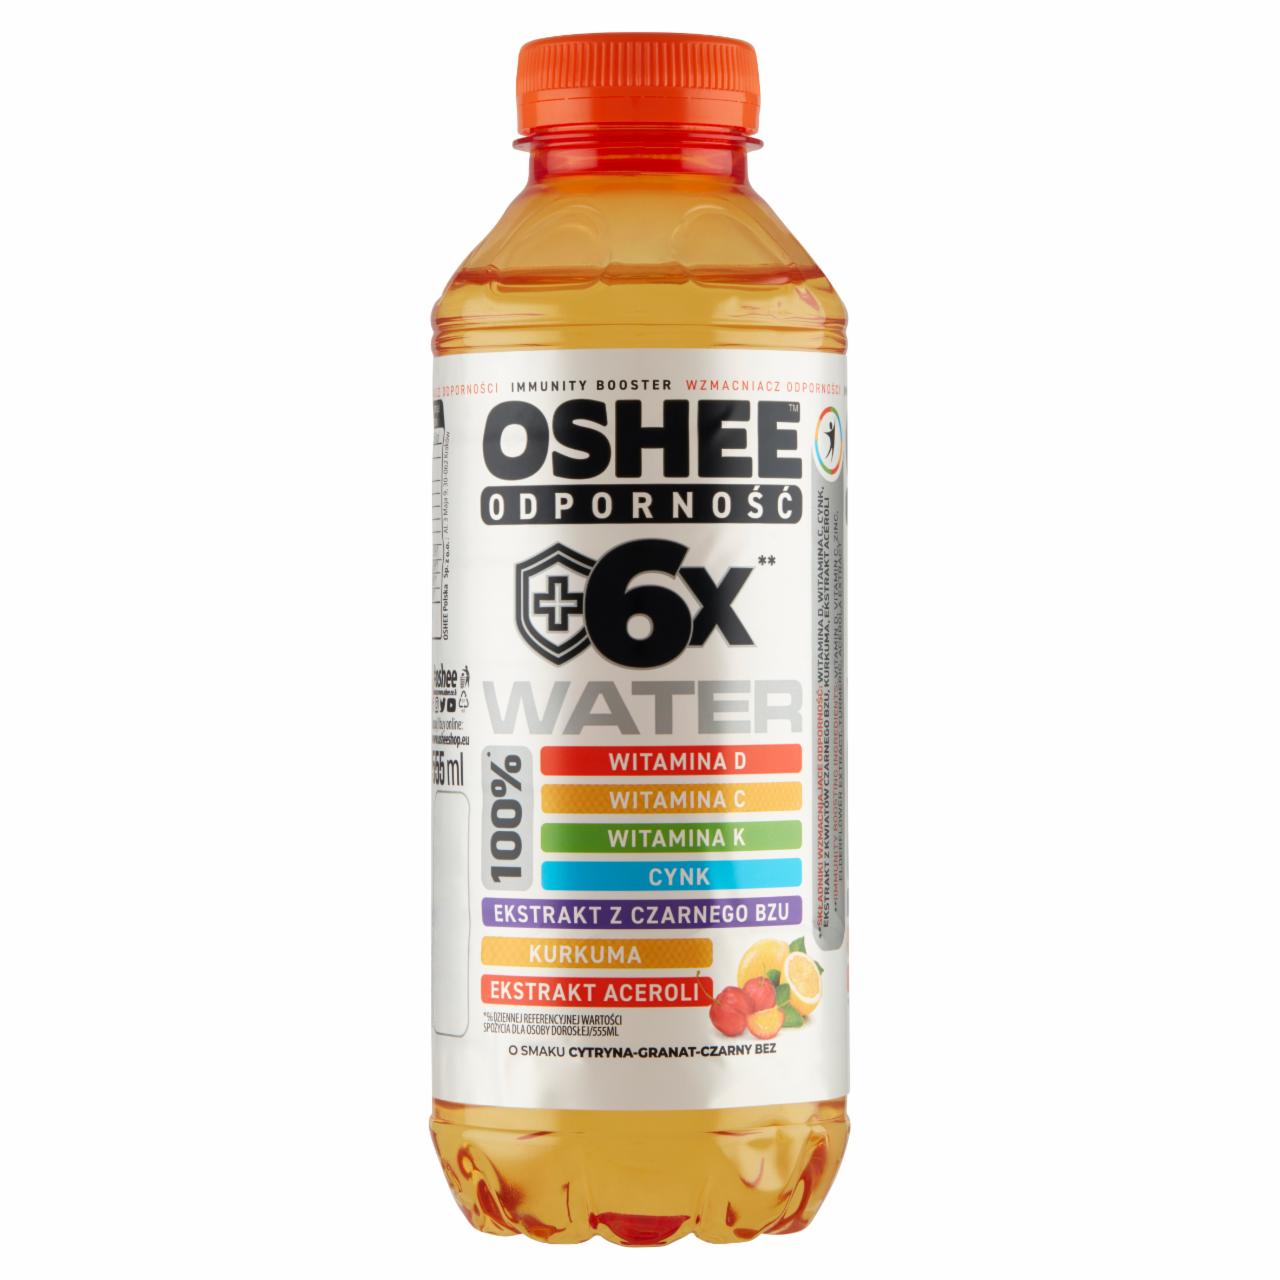 Zdjęcia - Oshee Water Odporność Napój niegazowany o smaku cytryna-granat-czarny bez 555 ml